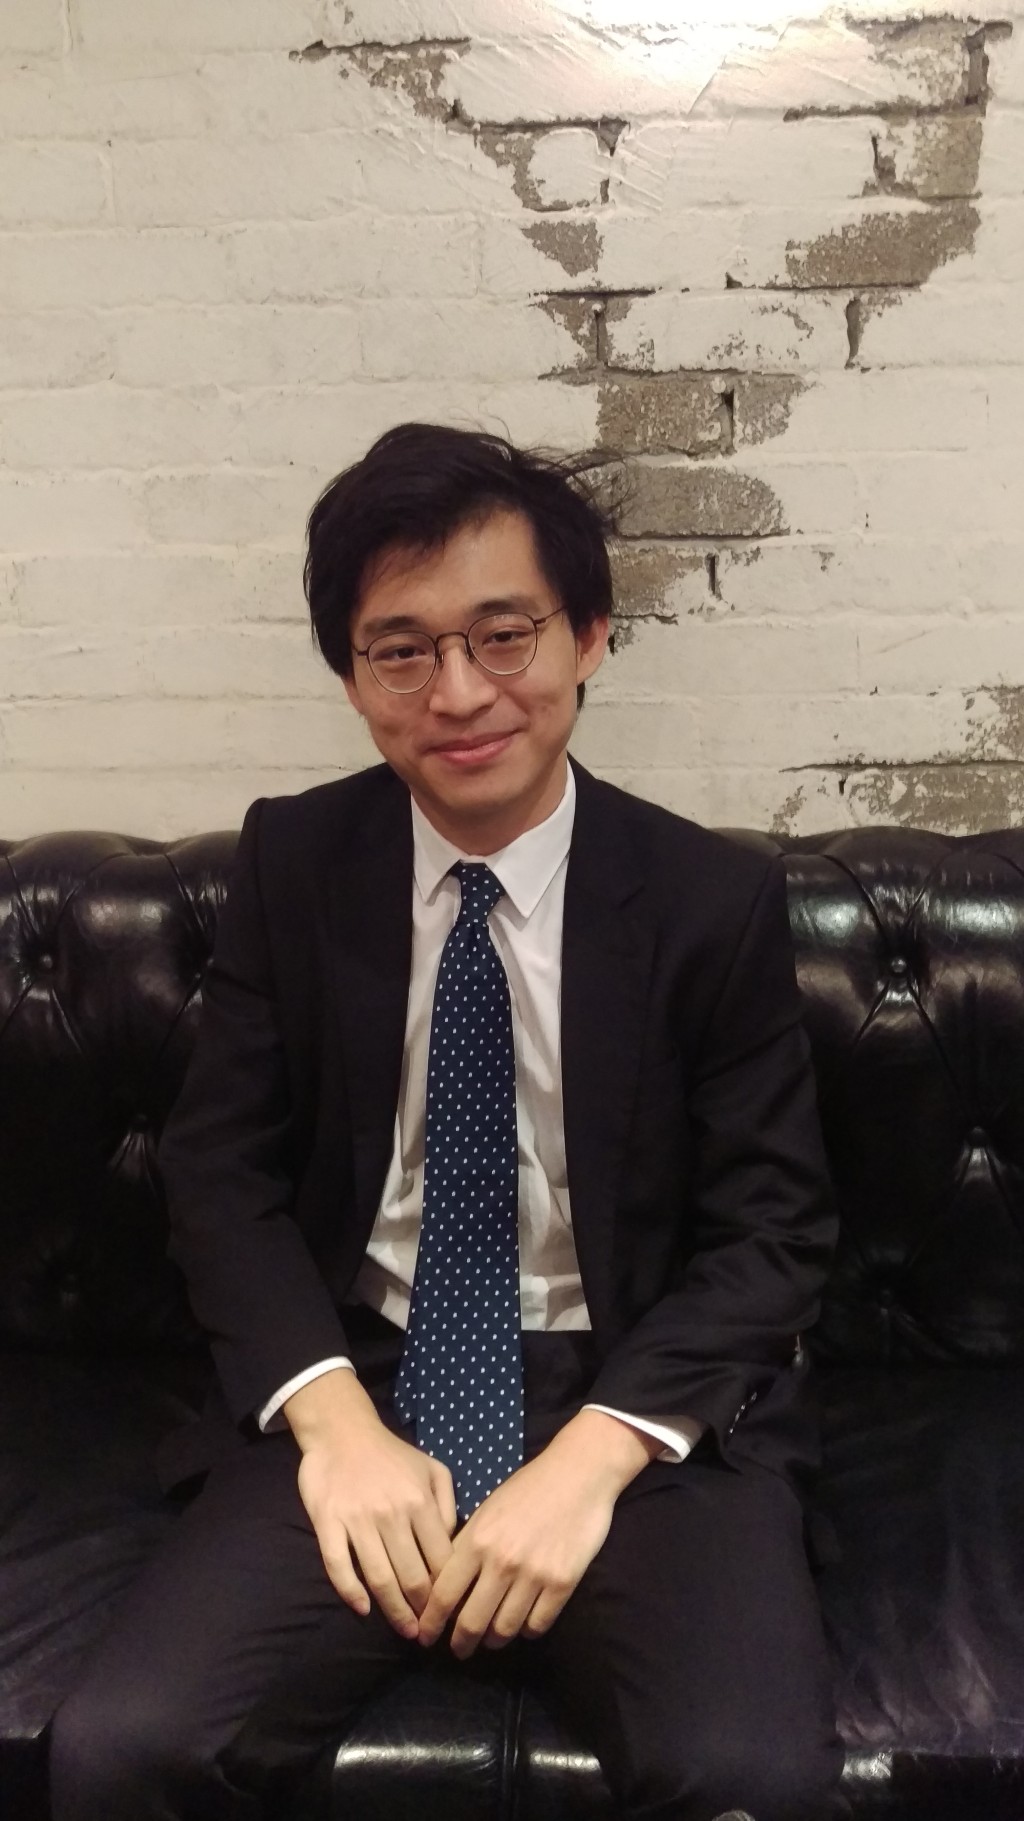 林作畢業於英國牛津大學數學系的林作，在倫敦法律學院取得法律文憑後，2013年回流再攻讀香港大學法學碩士，其後成為執業大律師。